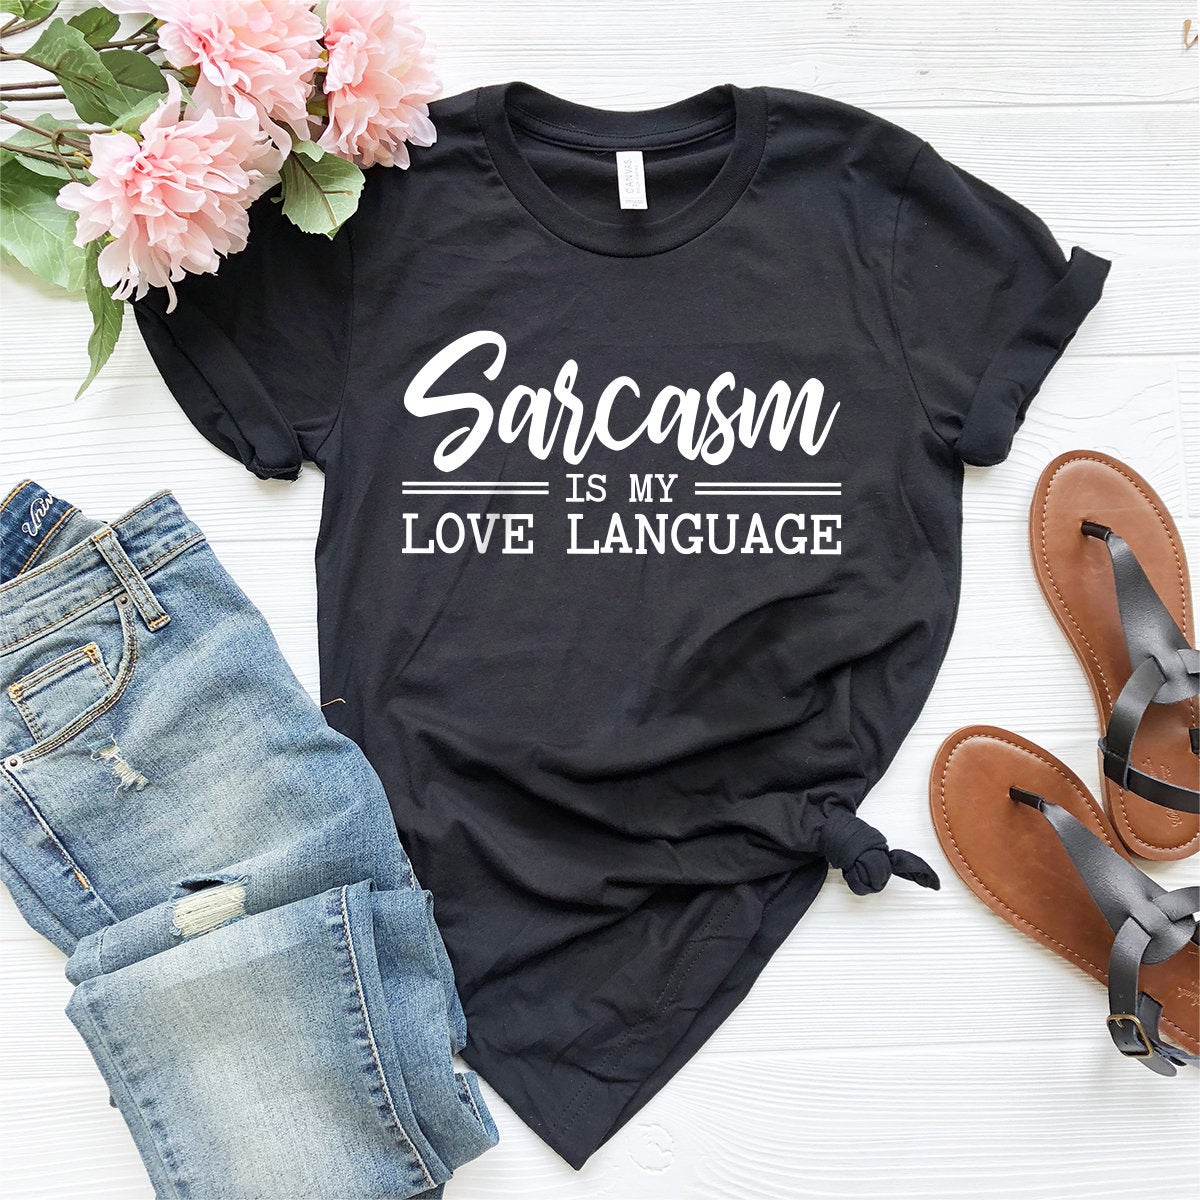 Sarcastic Shirt, Funny Sarcasm Tee, Sarcastic T-Shirt, Sarcasm Is My Love Language Shirt, Funny Sarcastic Tee, Sarcastic Quotes Shirt - Fastdeliverytees.com